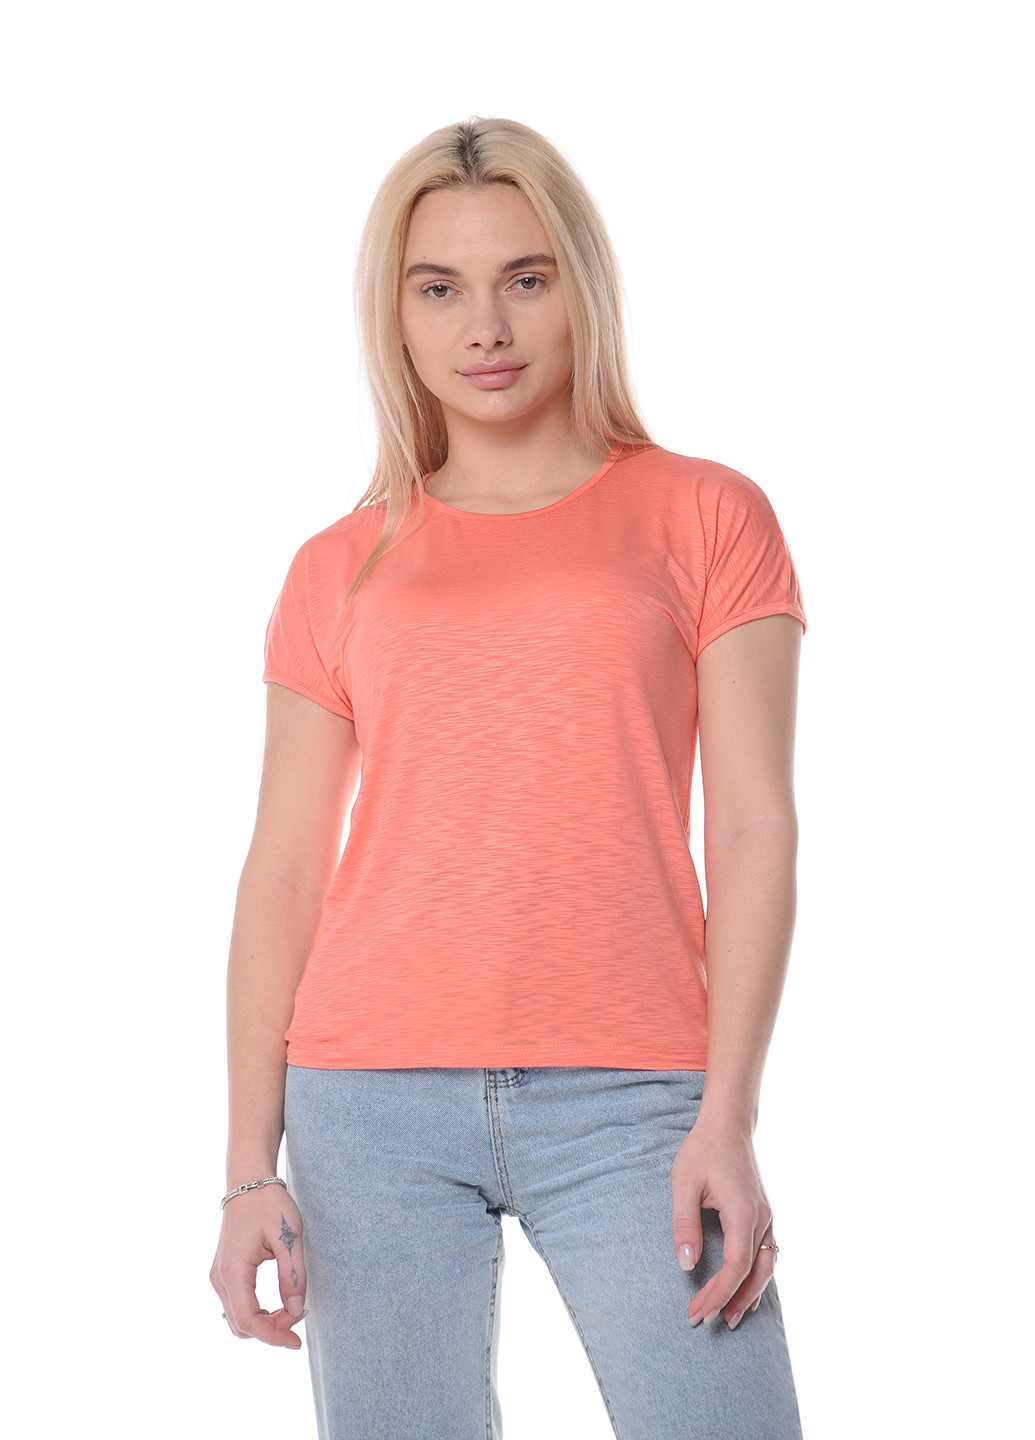 Коралловая всесезон футболка женская Наталюкс 80-2350